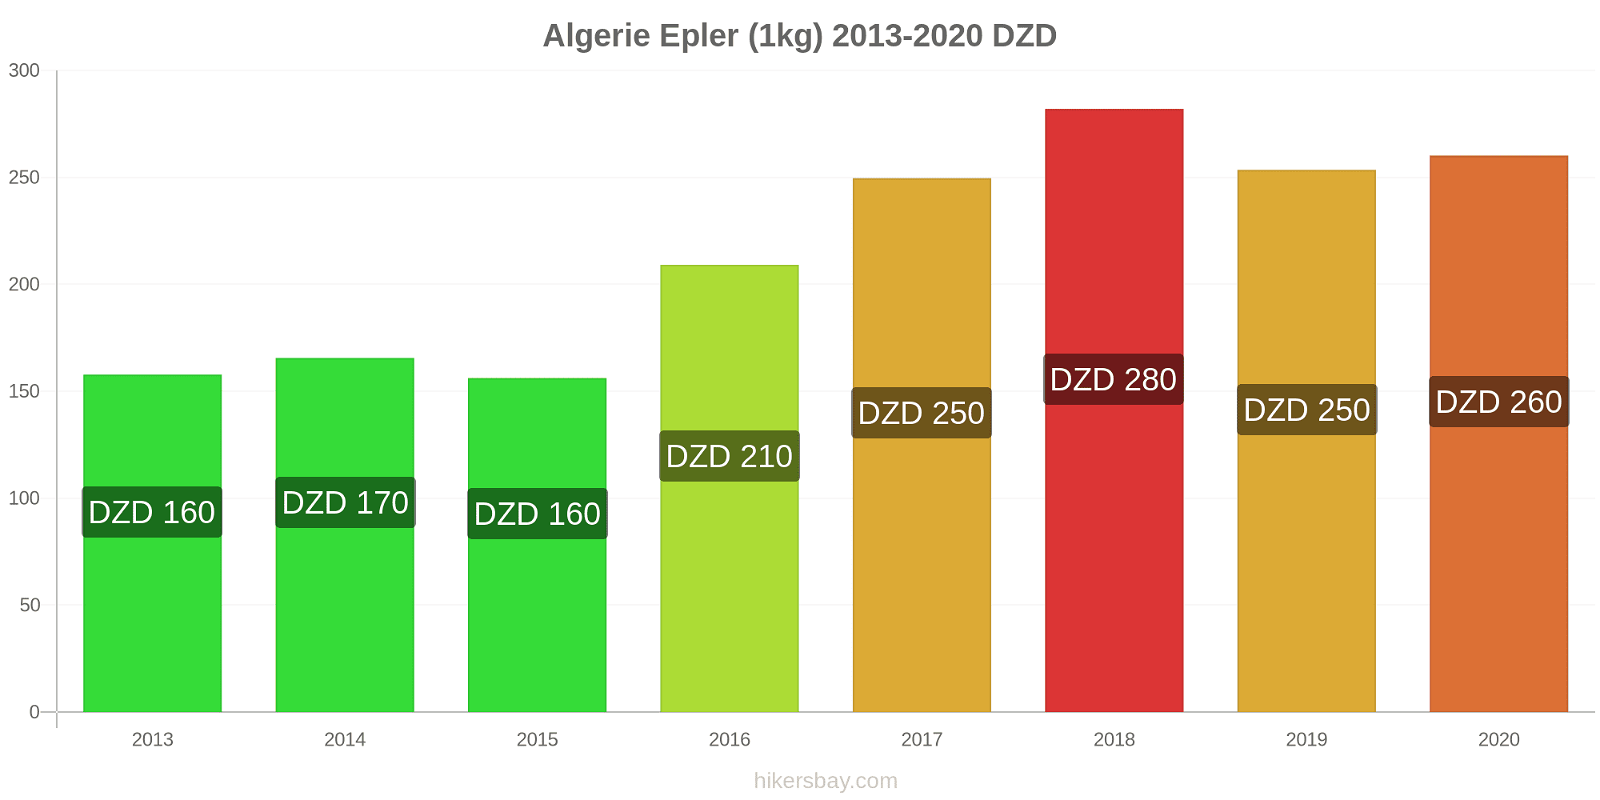 Algerie prisendringer Epler (1kg) hikersbay.com